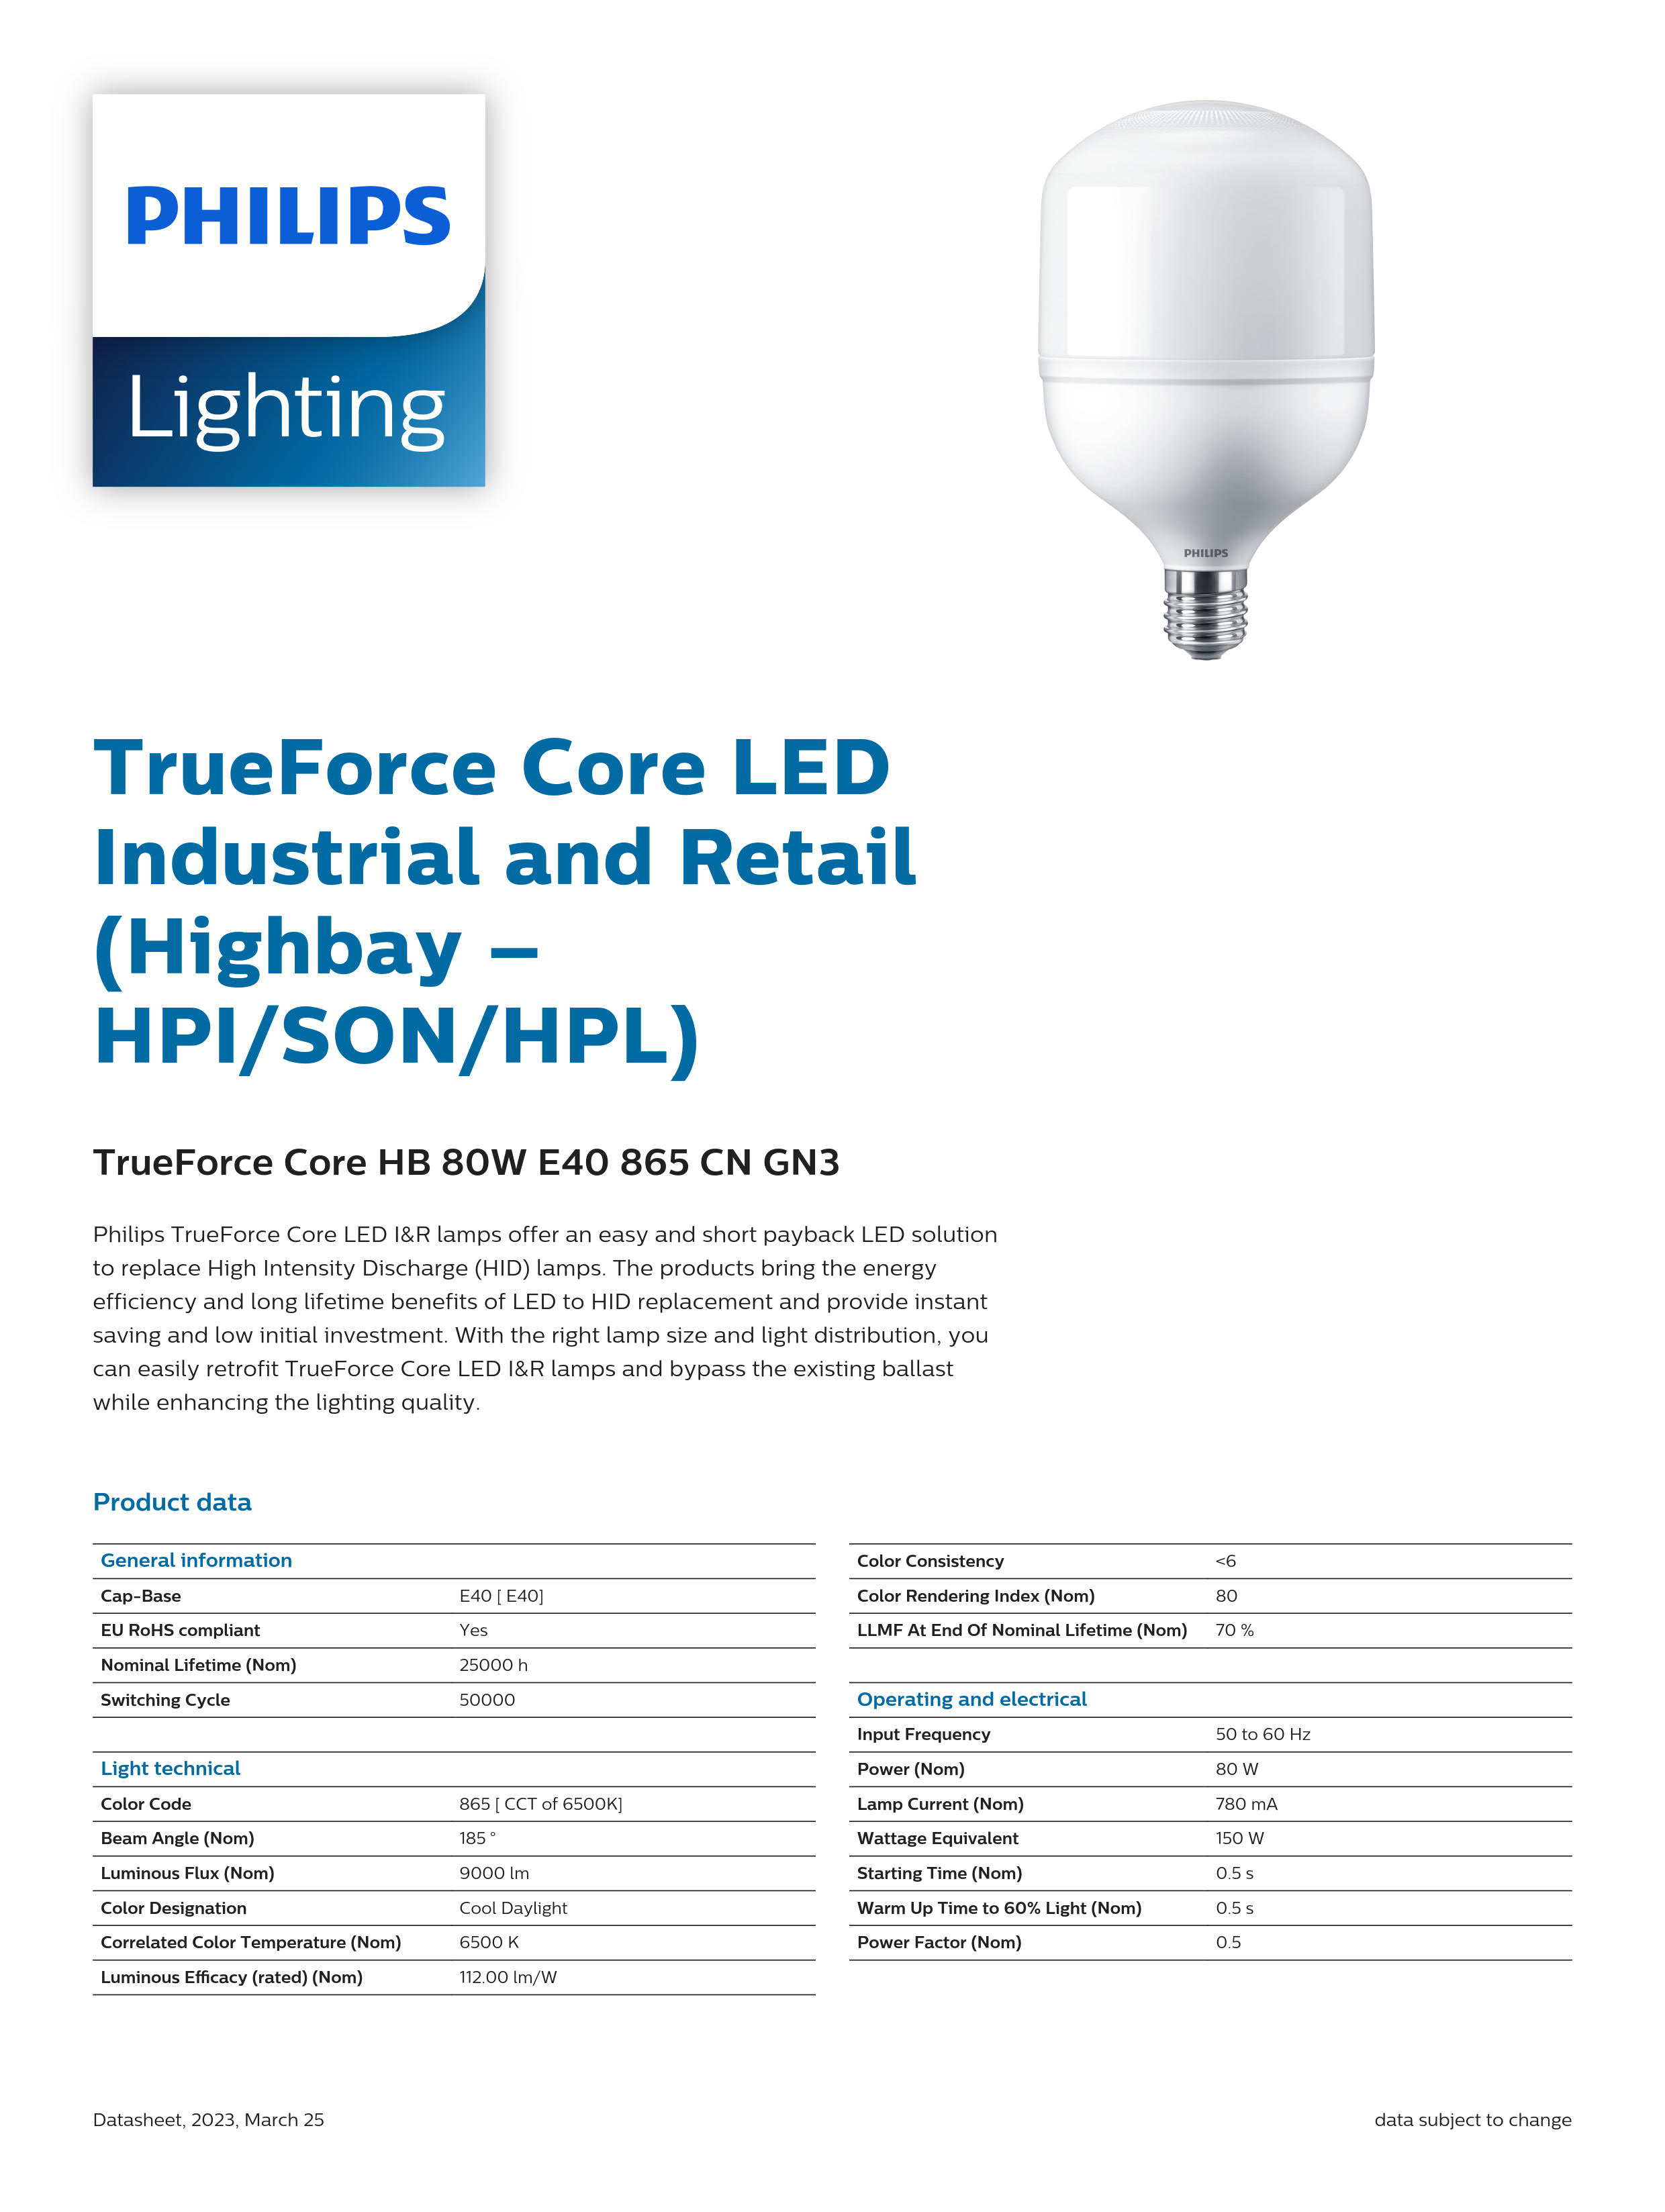 PHILIPS LED Bulb TrueForce Core HB 80W E40 865 CN GN3 929002409310